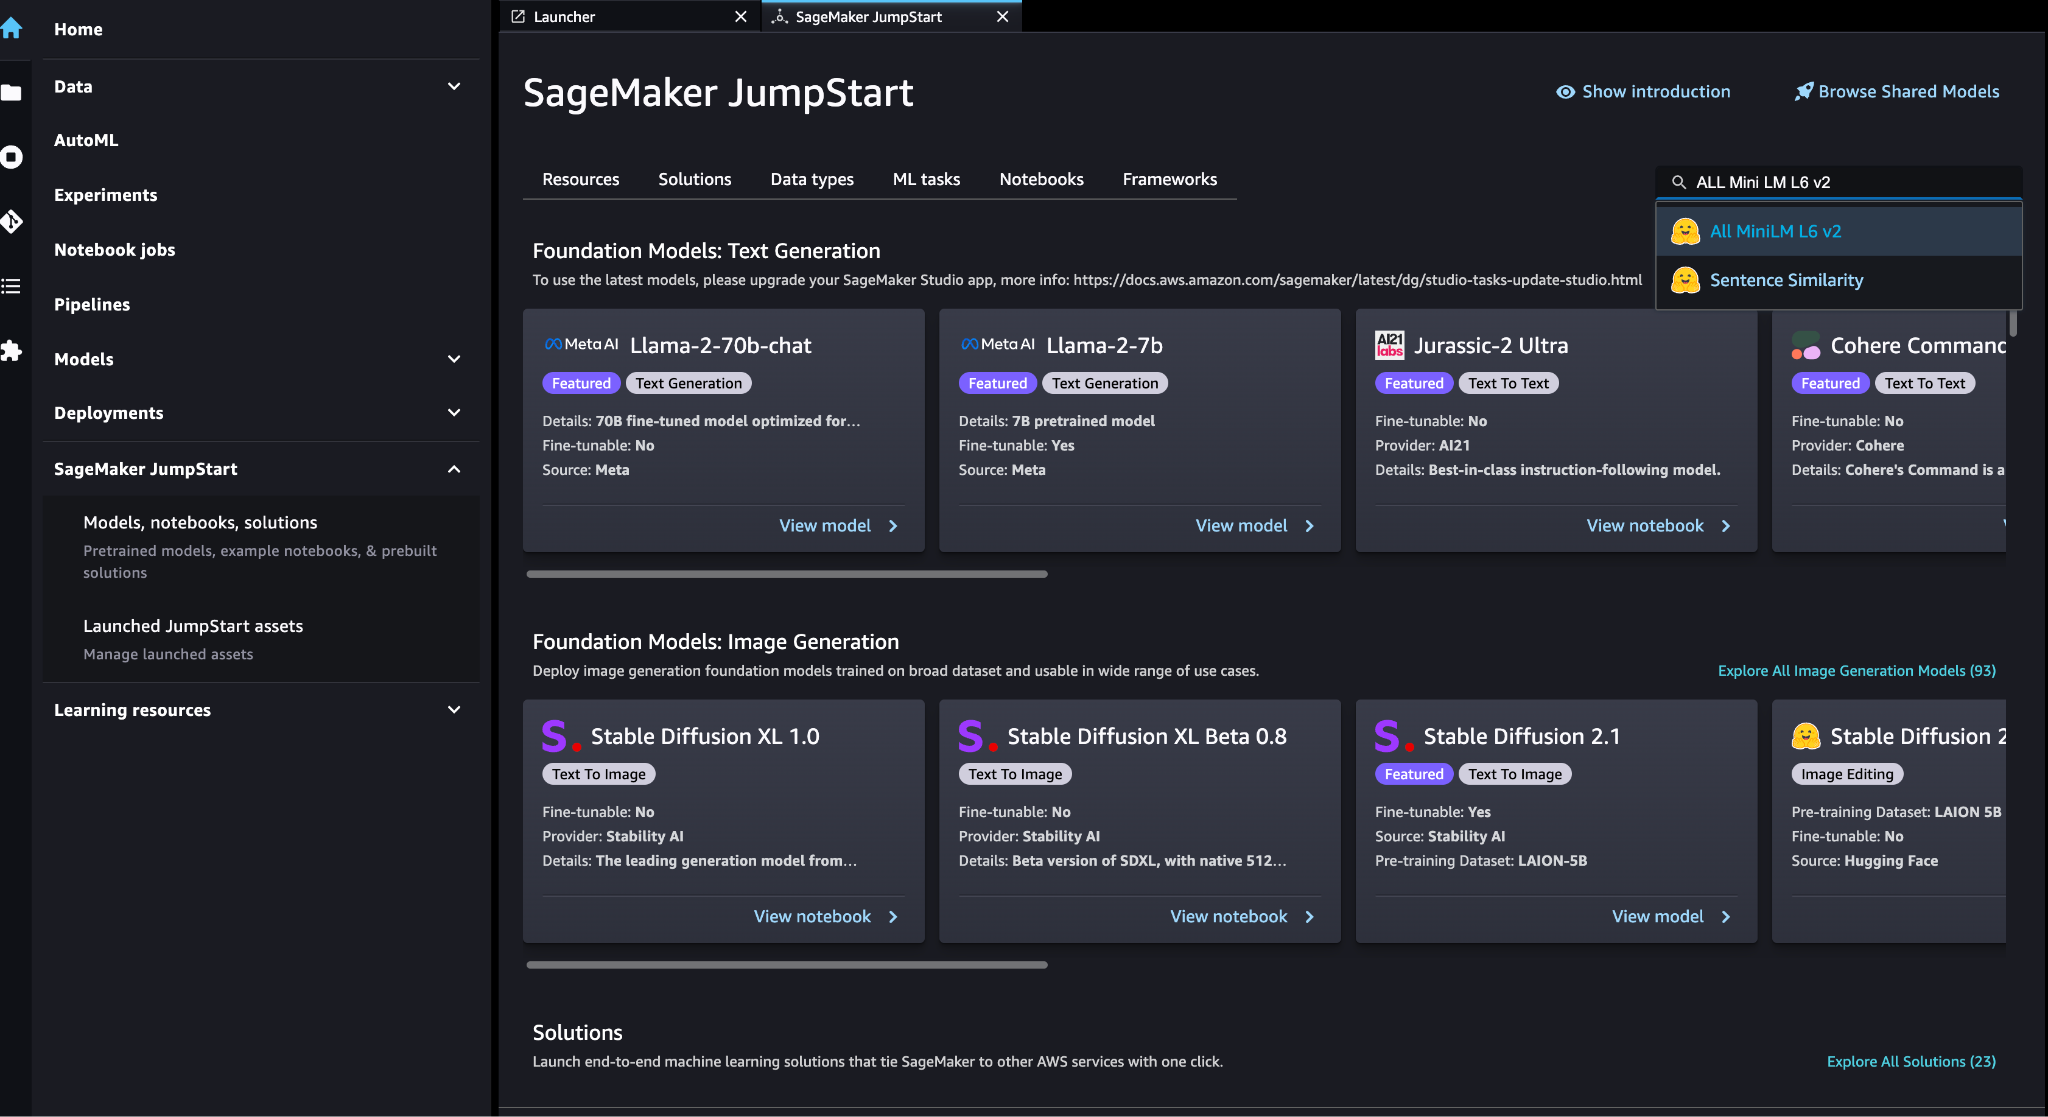 SageMaker JumpStart 模型、笔记本、解决方案